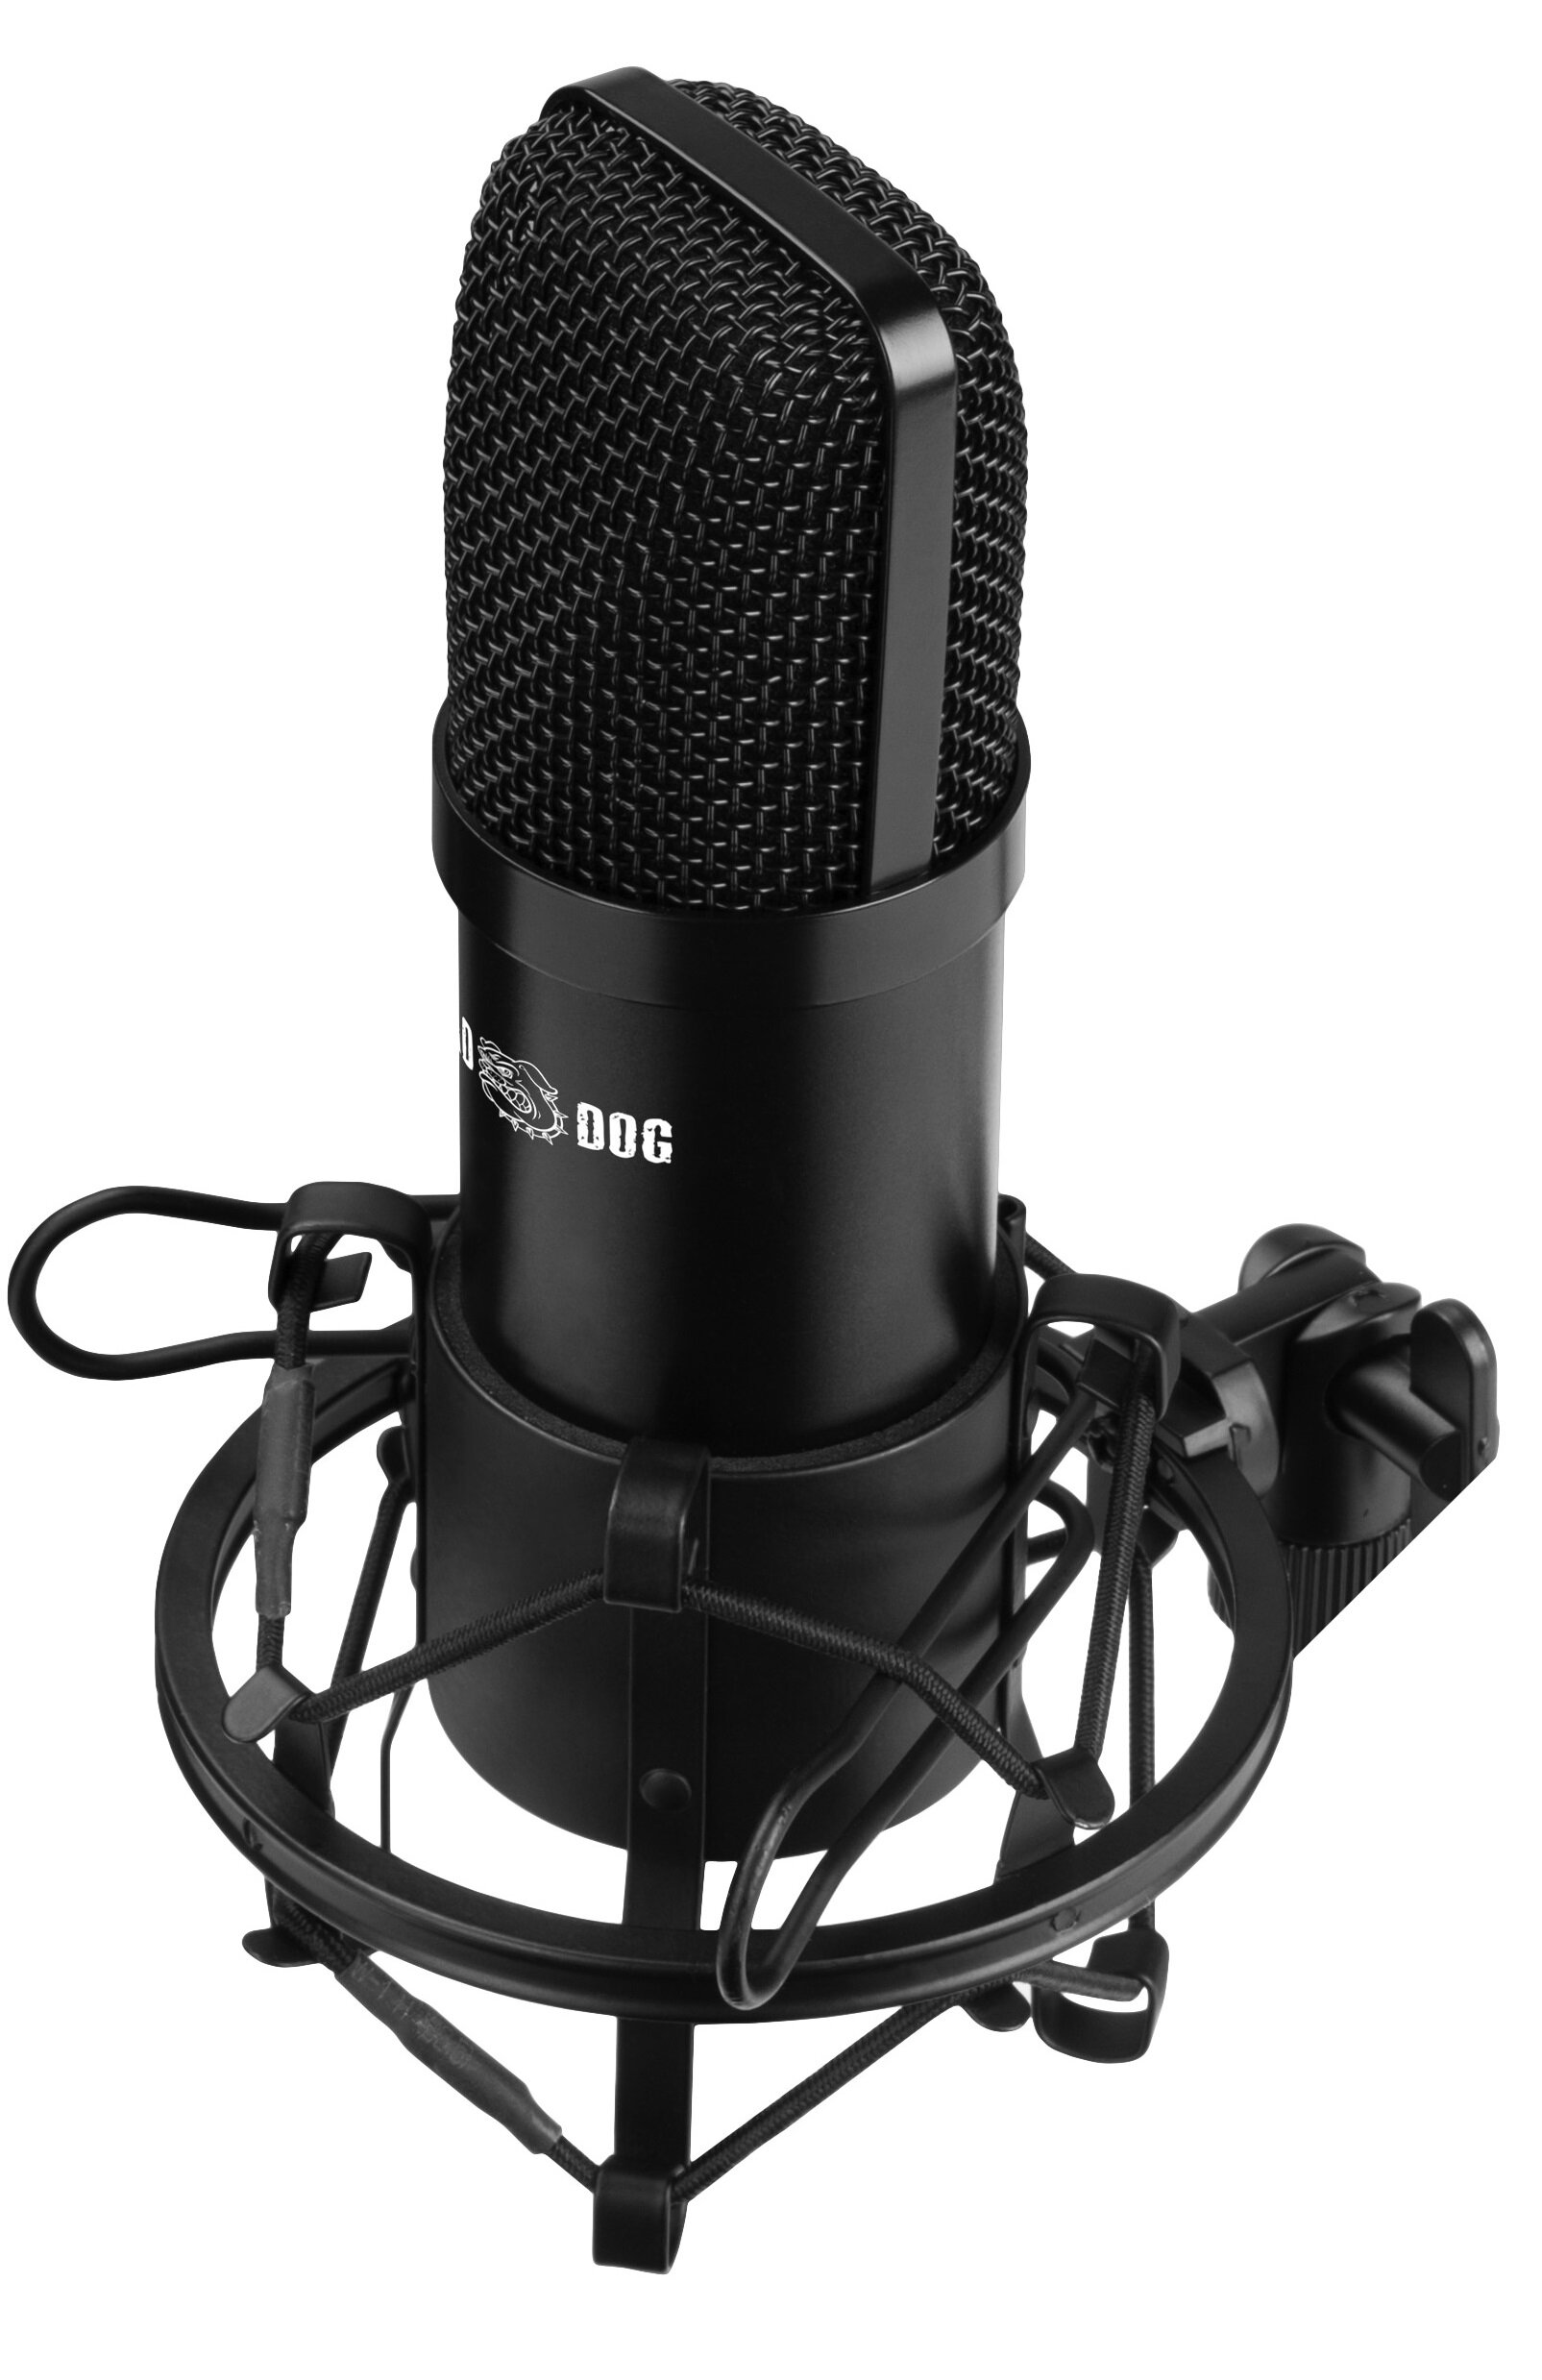 MAD DOG Pro GMC301 streamingowy uchwyt 360 stopni filtr POP statyw Mikrofon  - ceny i opinie w Media Expert